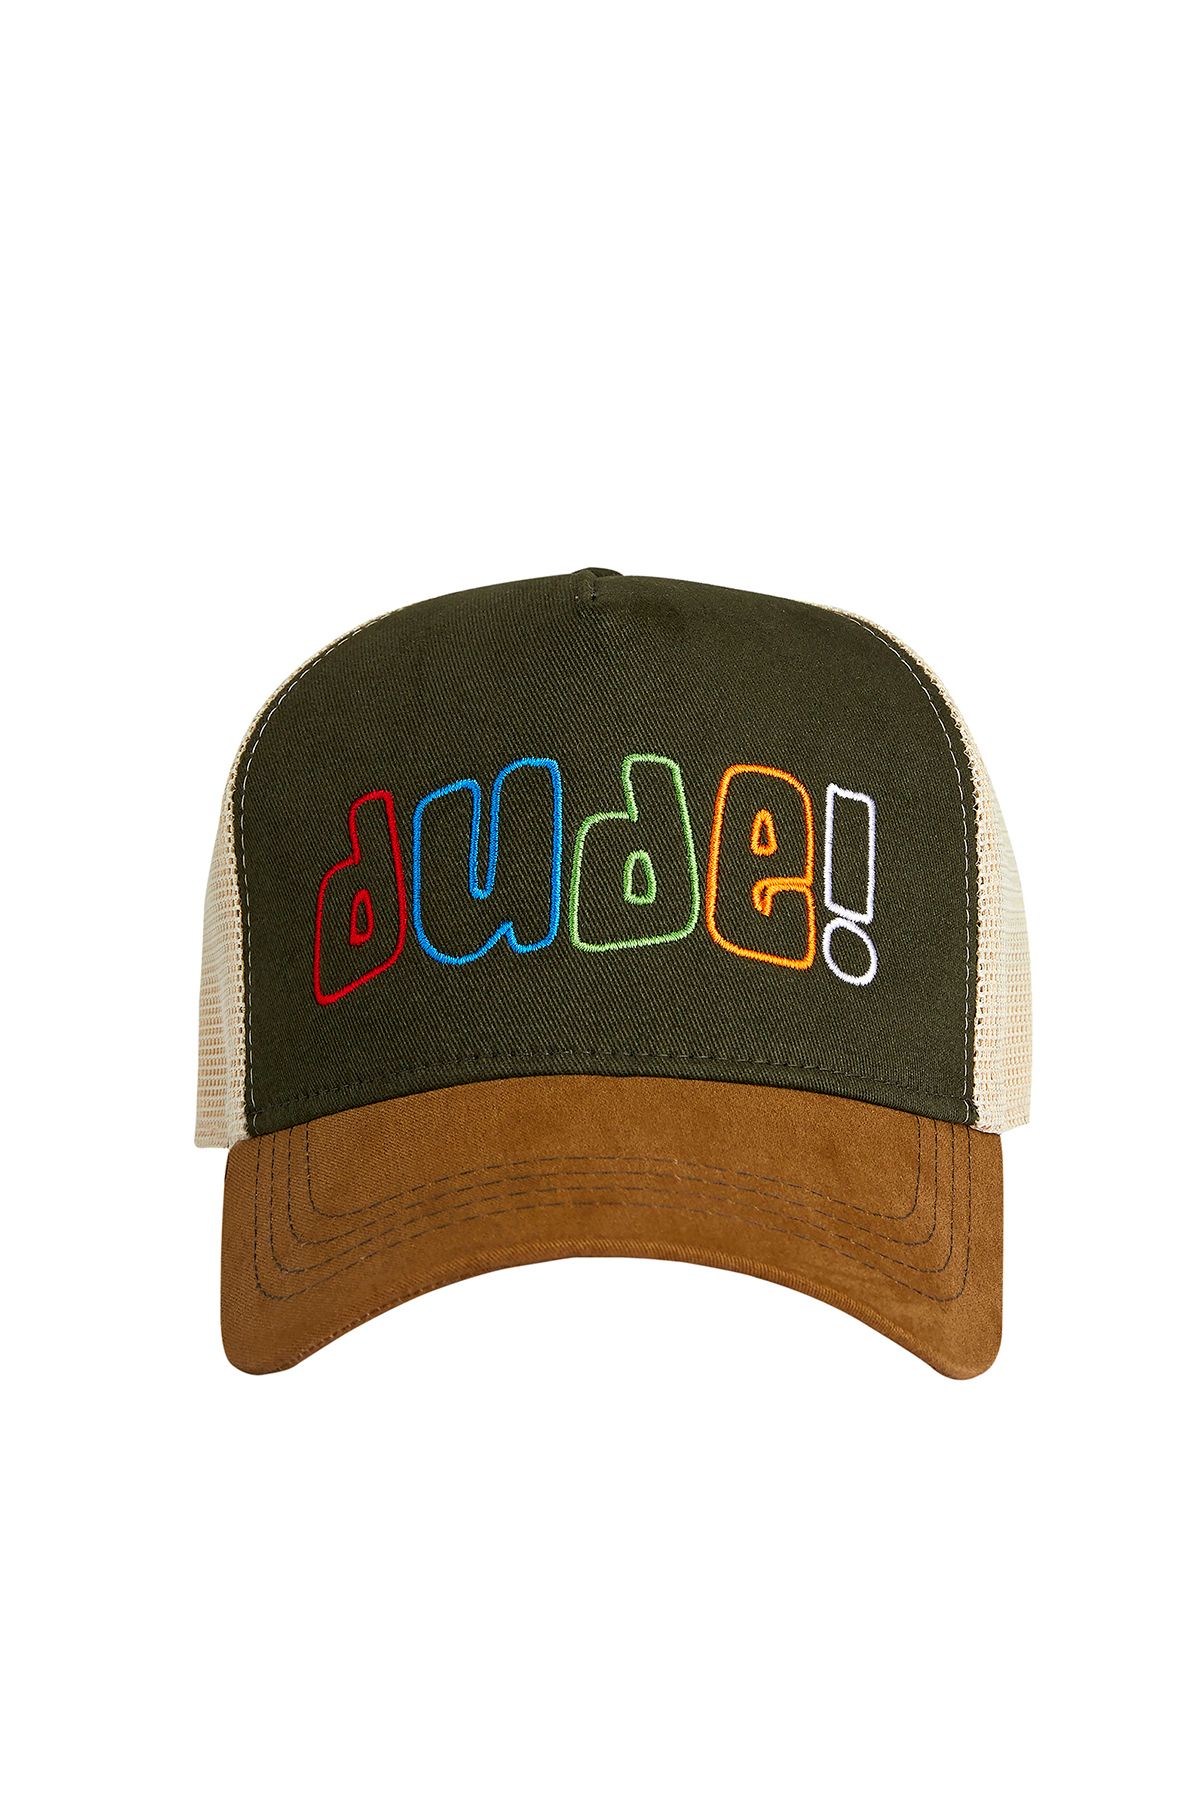 Bad Bear Dude Cap Haki Yeşil Unisex Şapka